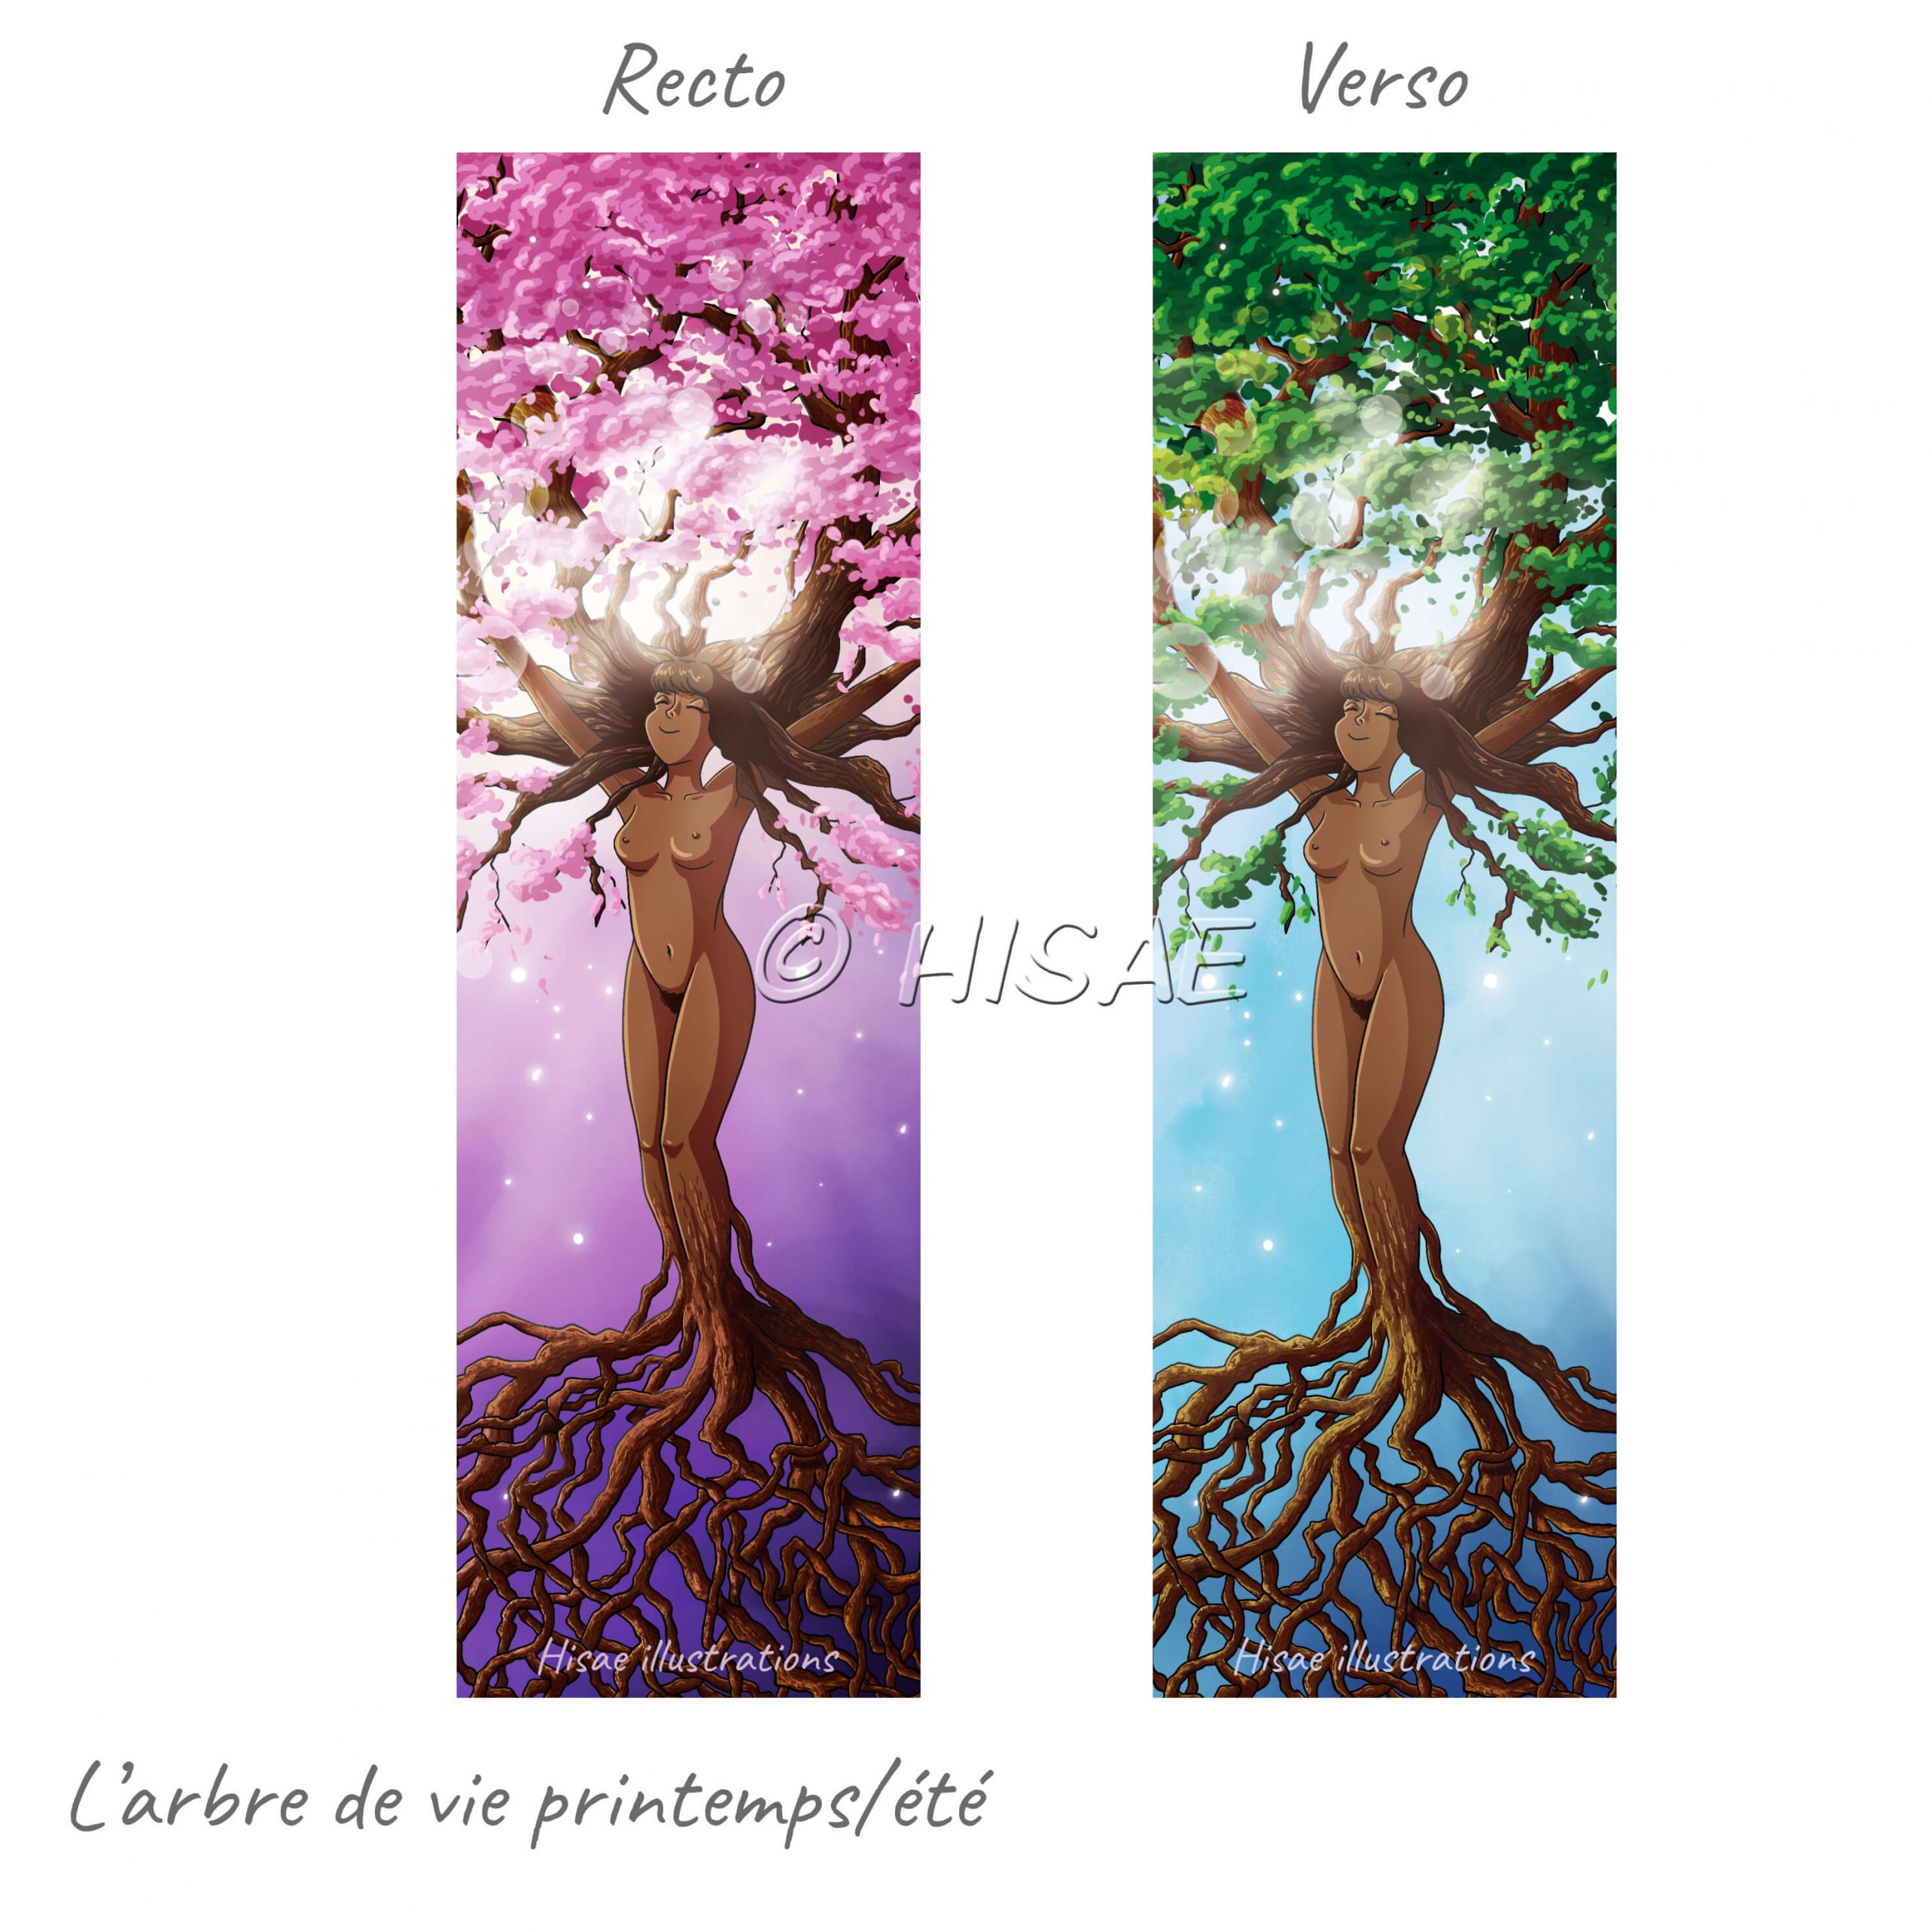 Marque-page numérique représentant la femme arbre-monde, au printemps et en été ©Hisae illustrations